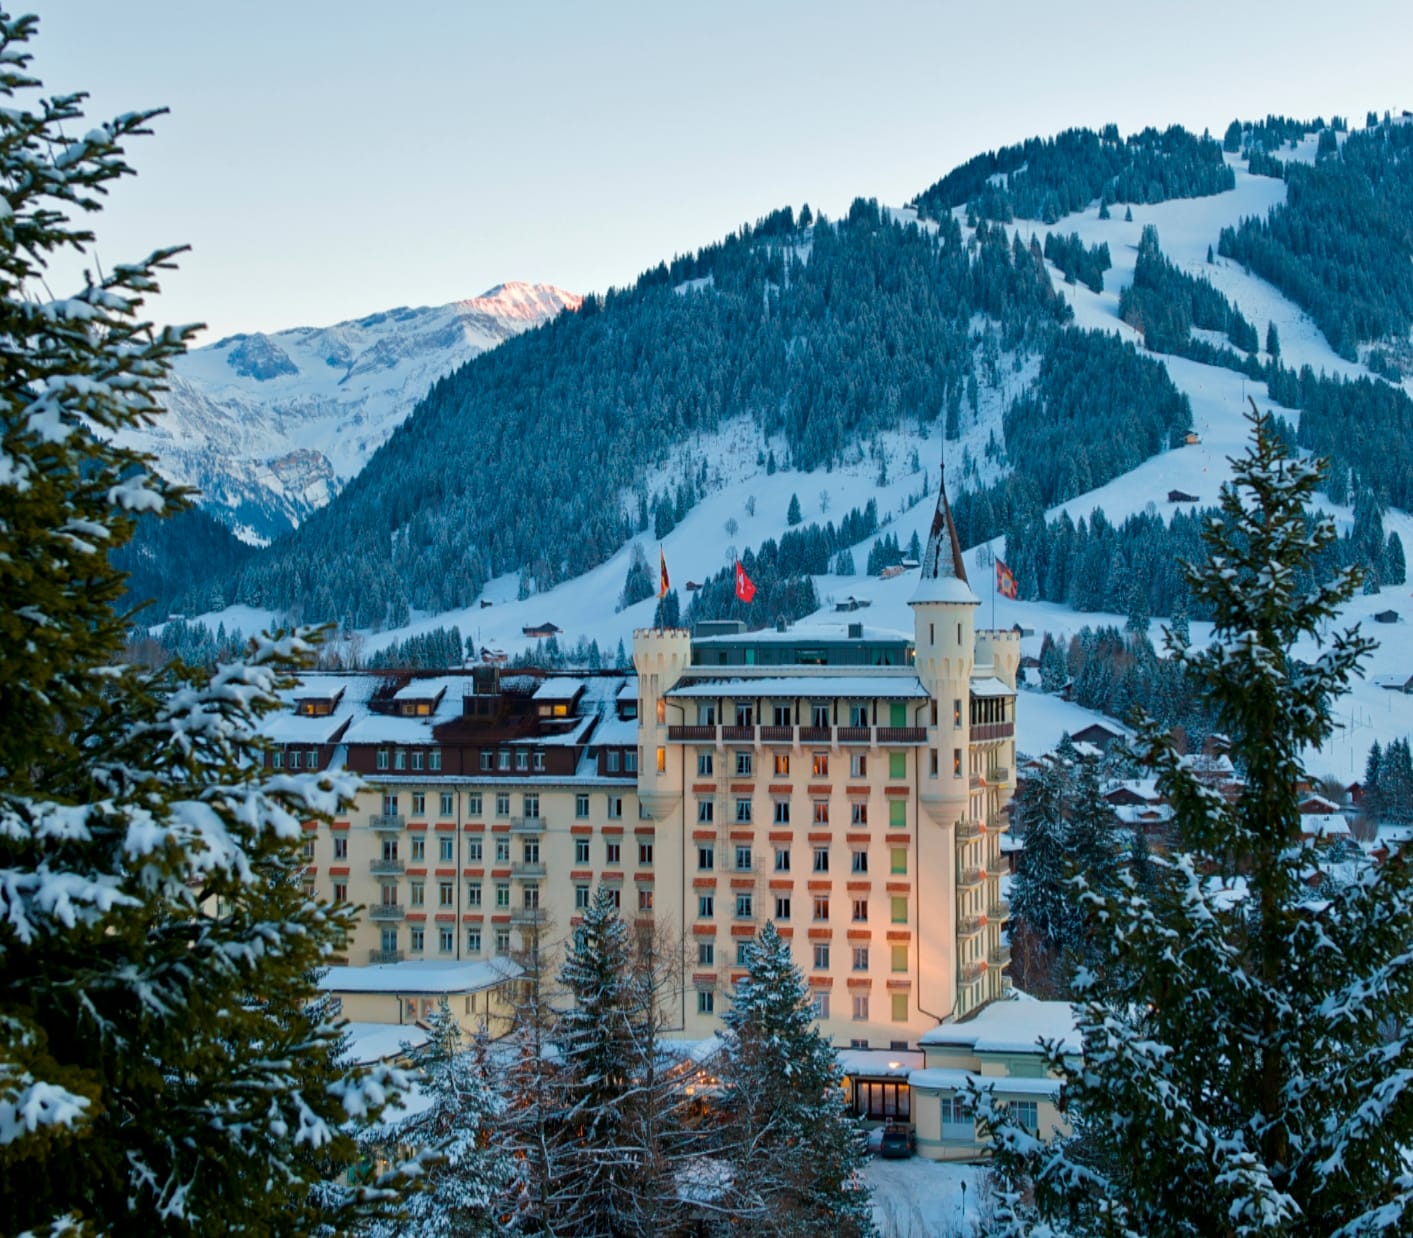 Eingebettet in eine idyllische Winterlandschaft steht das Gstaad Palace Hotel, das seit über 100 Jahren als eines der berühmtesten Hotels der Schweiz gilt. Luxus und Promigarantie haben ihren Preis: 740 Euro kostet die Nacht in einem Doppelzimmer.